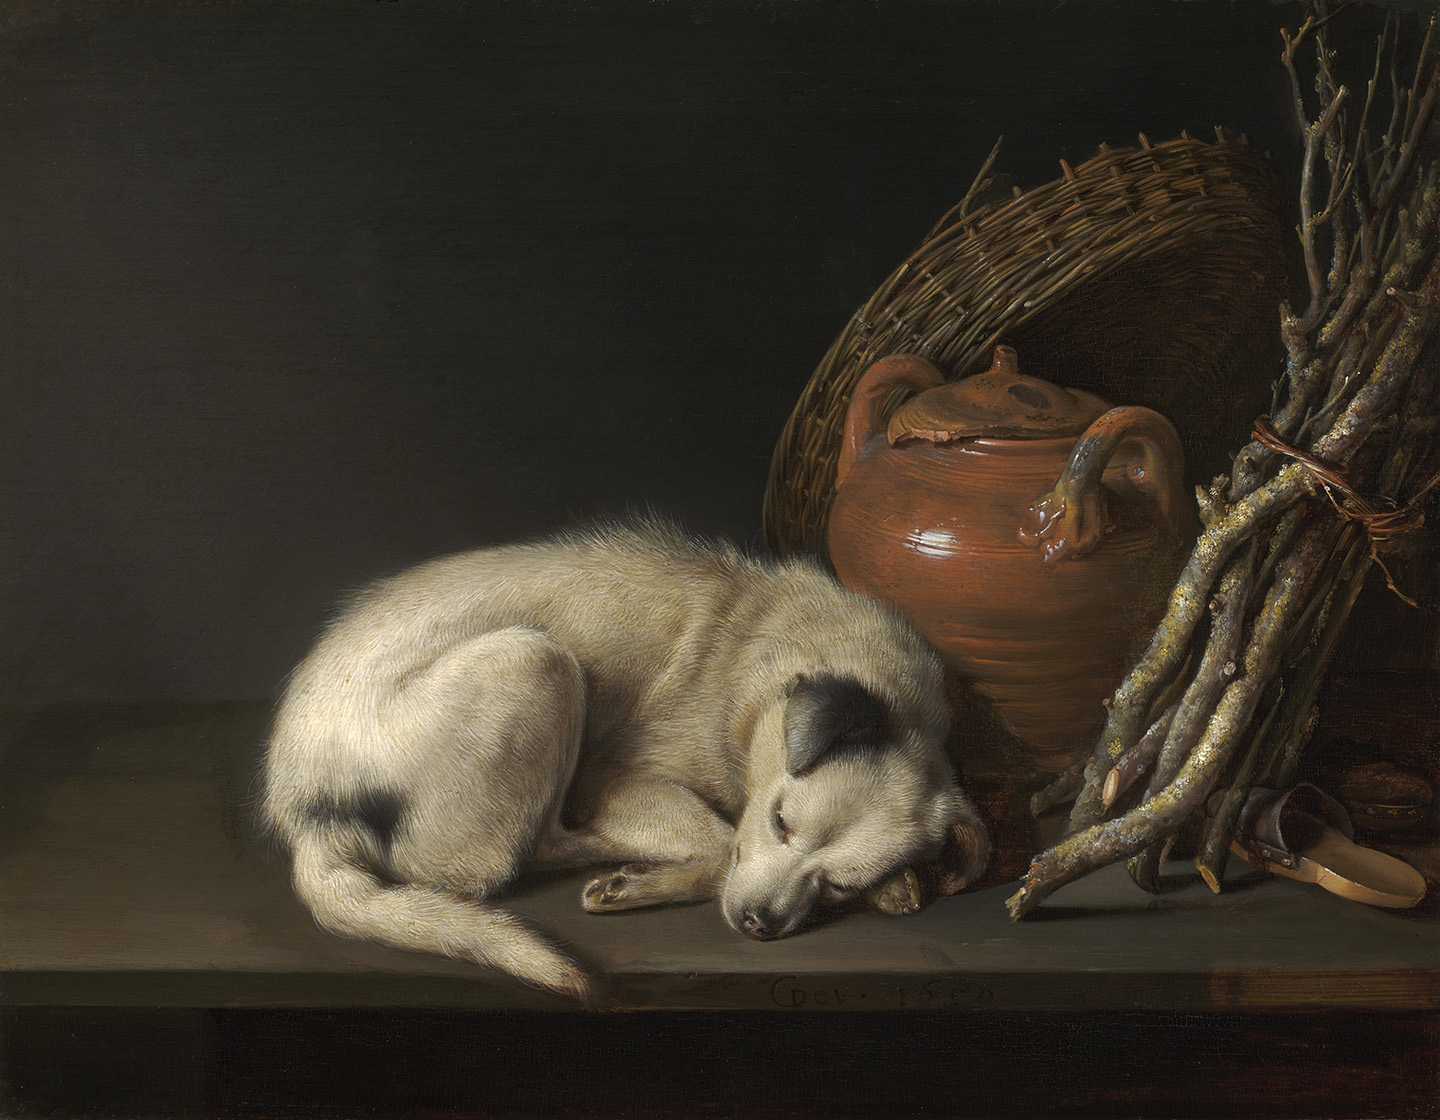 Tác phẩm “Dog at Rest” (Chú chó nghỉ ngơi) của họa sĩ Gerrit Dou, vẽ năm 1650. Tranh sơn dầu trên bảng vẽ; kích thước: 6,5 inch x 8,5 inch. Bộ sưu tập Rose-Marie và Eijk van Otterloo, Bảo tàng Mỹ thuật, Boston. (Ảnh: Tài liệu công cộng)